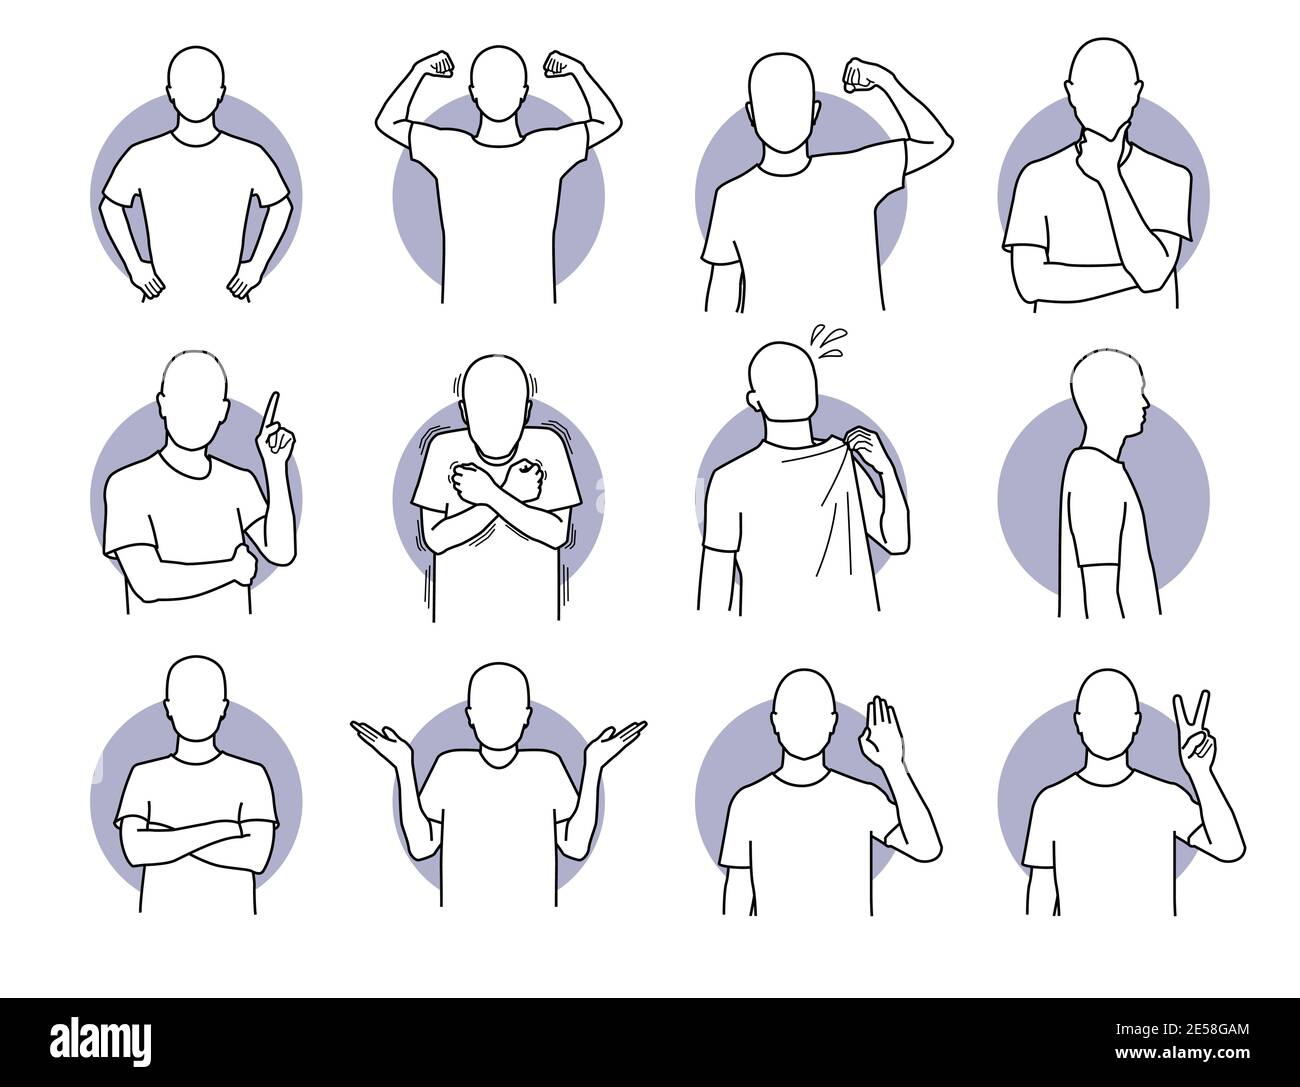 Grundlegende menschliche Handlungen und Körpersprachen. Vektor-Illustration eines Mannes mit verschiedenen Posen. Stock Vektor